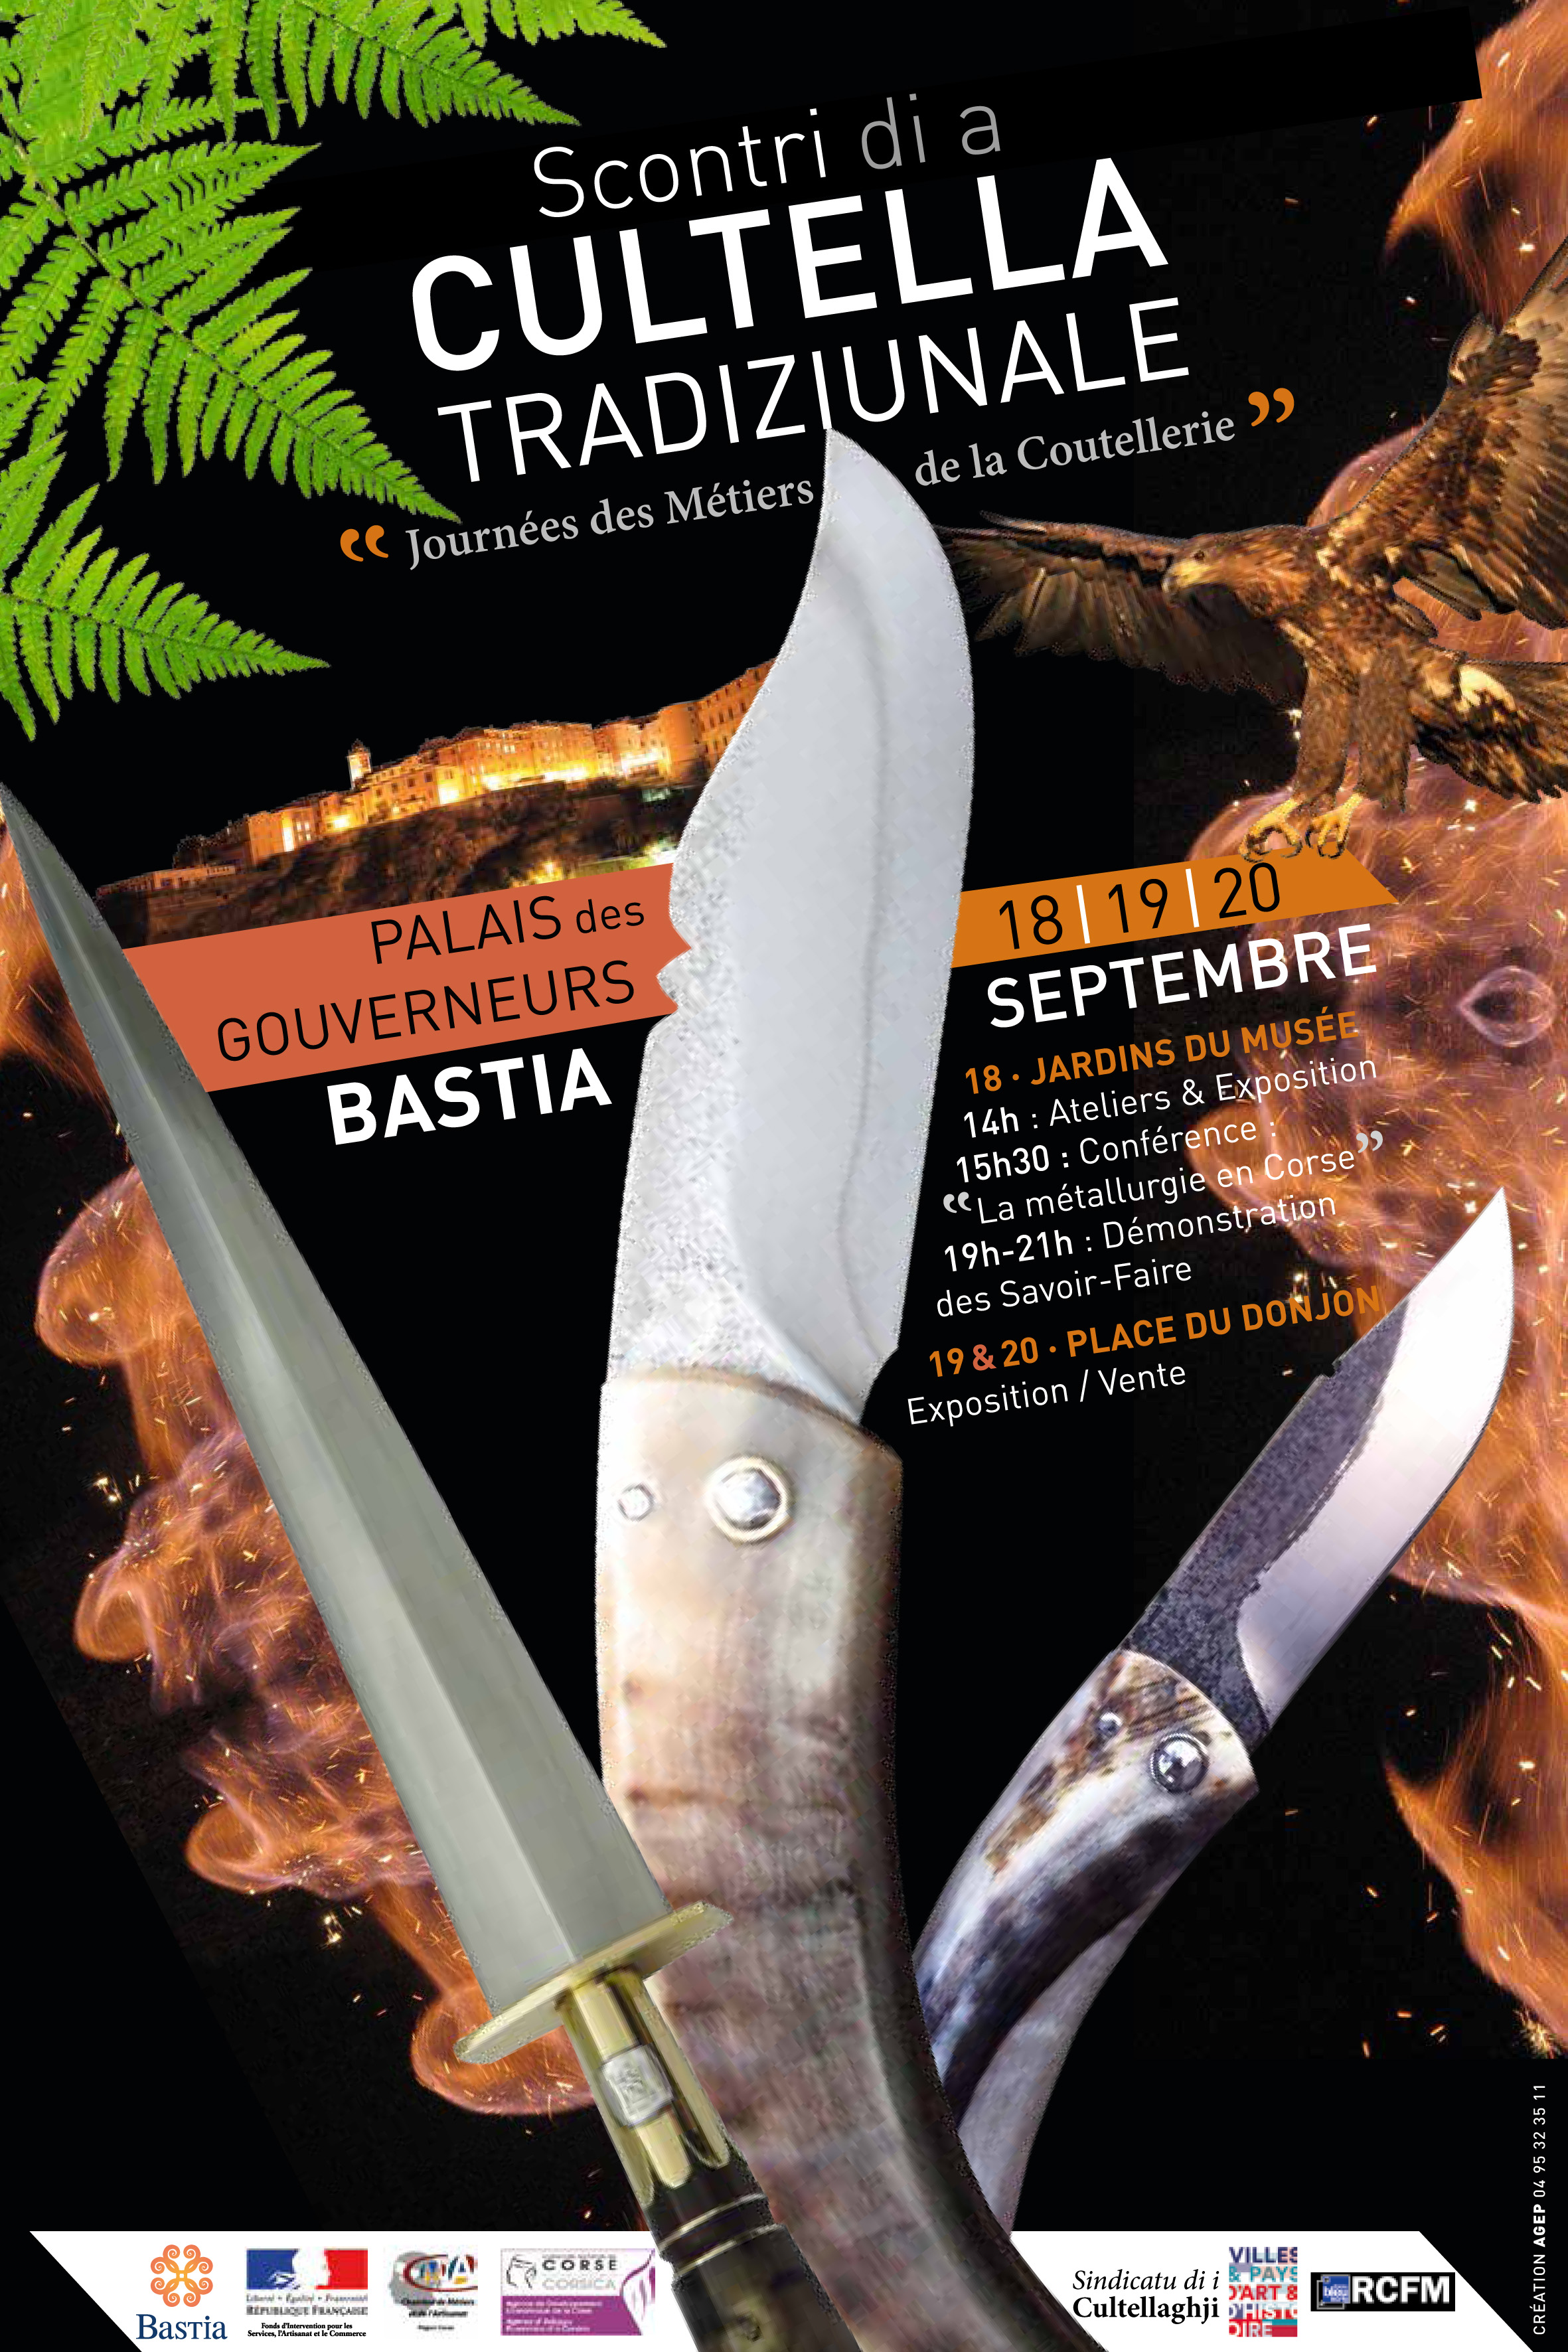 L’ADEC partenaire des 1ères journées des métiers de la coutellerie-Scontri di a cultella tradiziunale, organisées à Bastia du 18 au 20 septembre